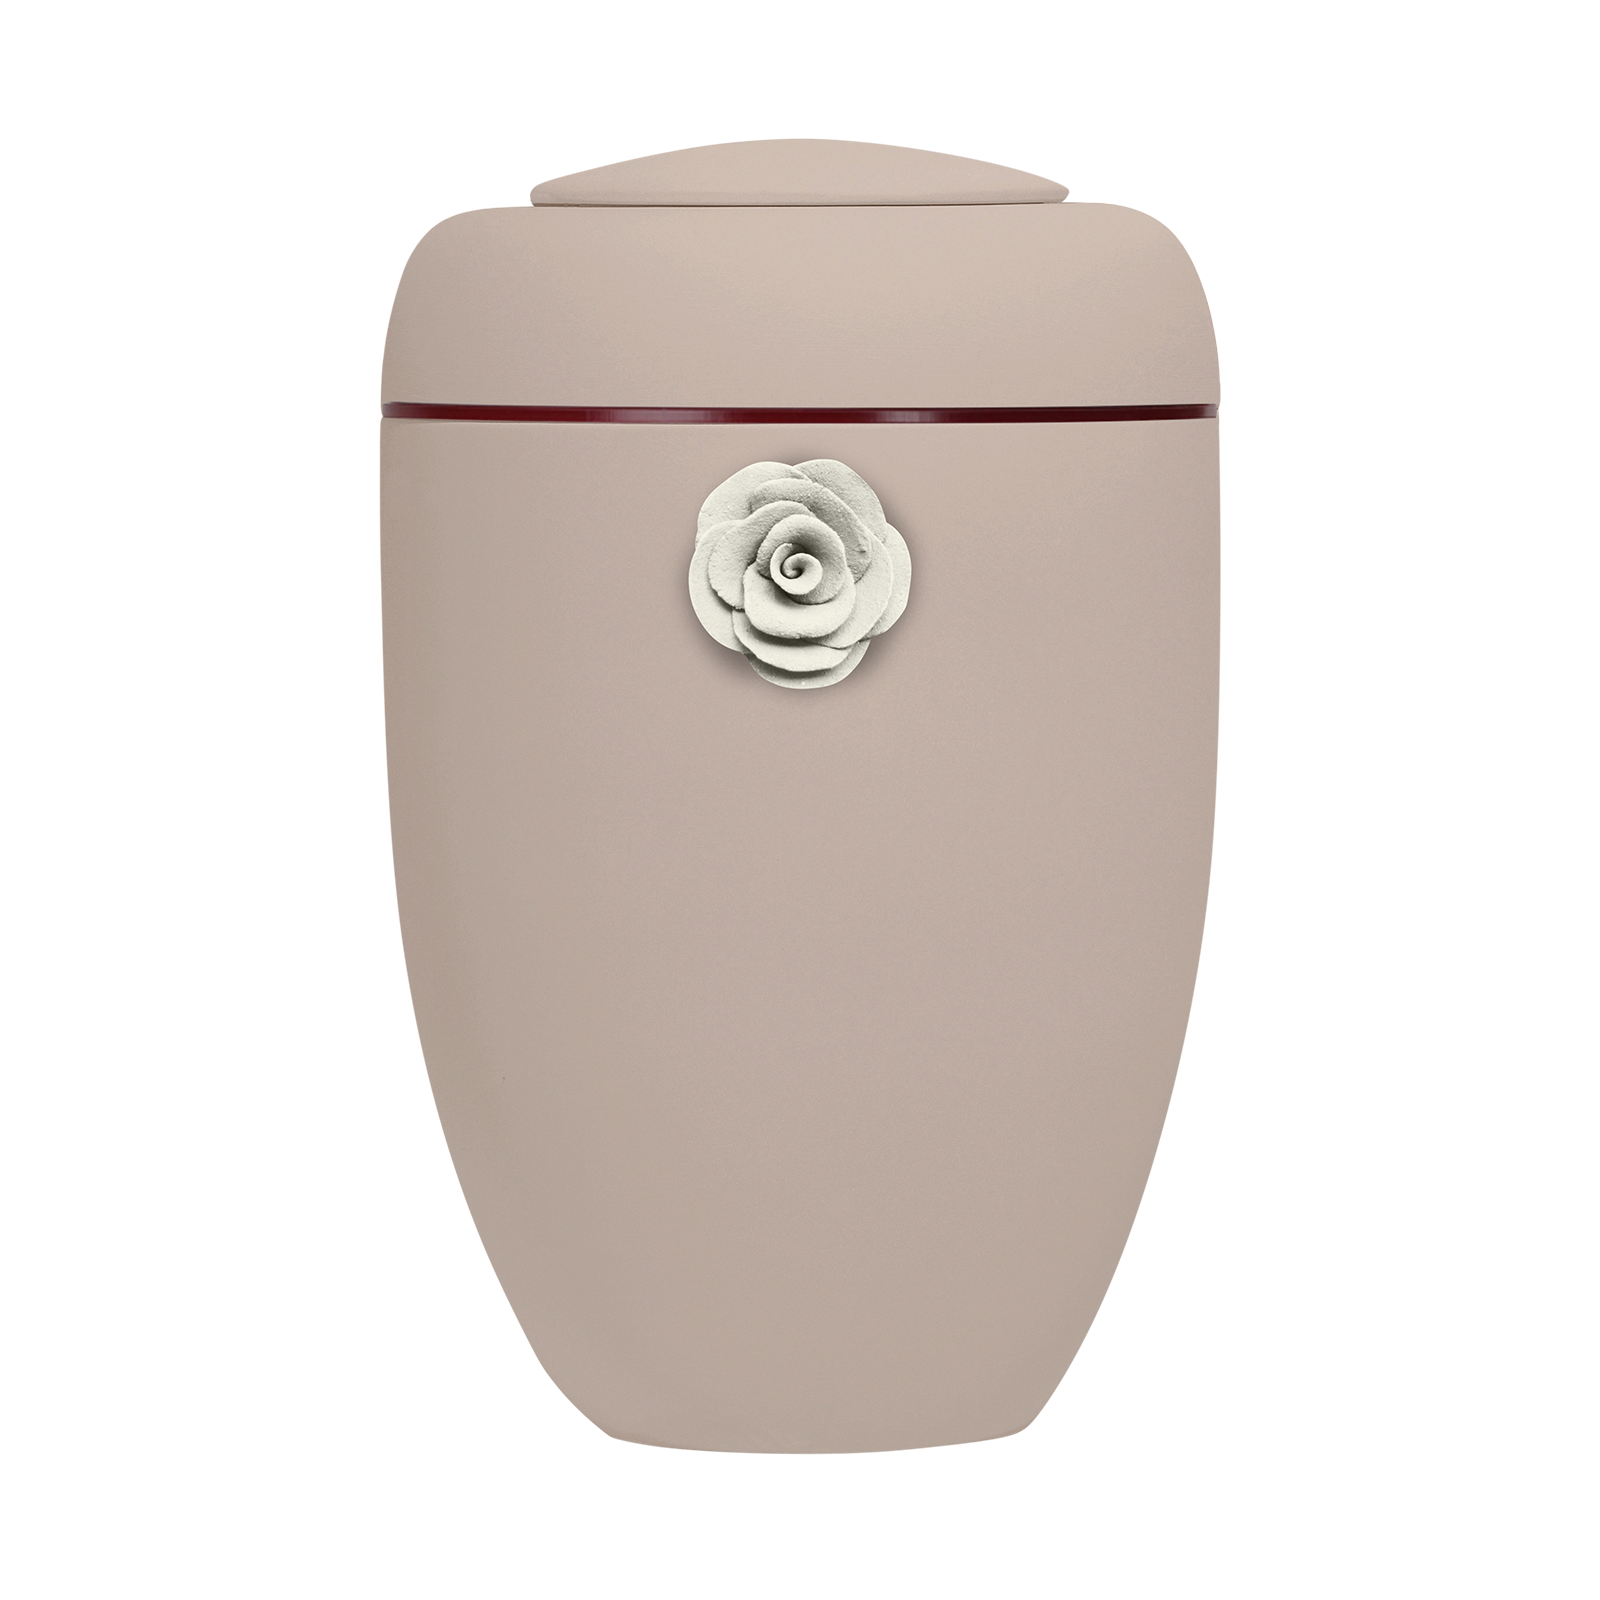 Oxidrote Symbol-Urne mit weißer Tonrose und roter Plexiglasscheibe